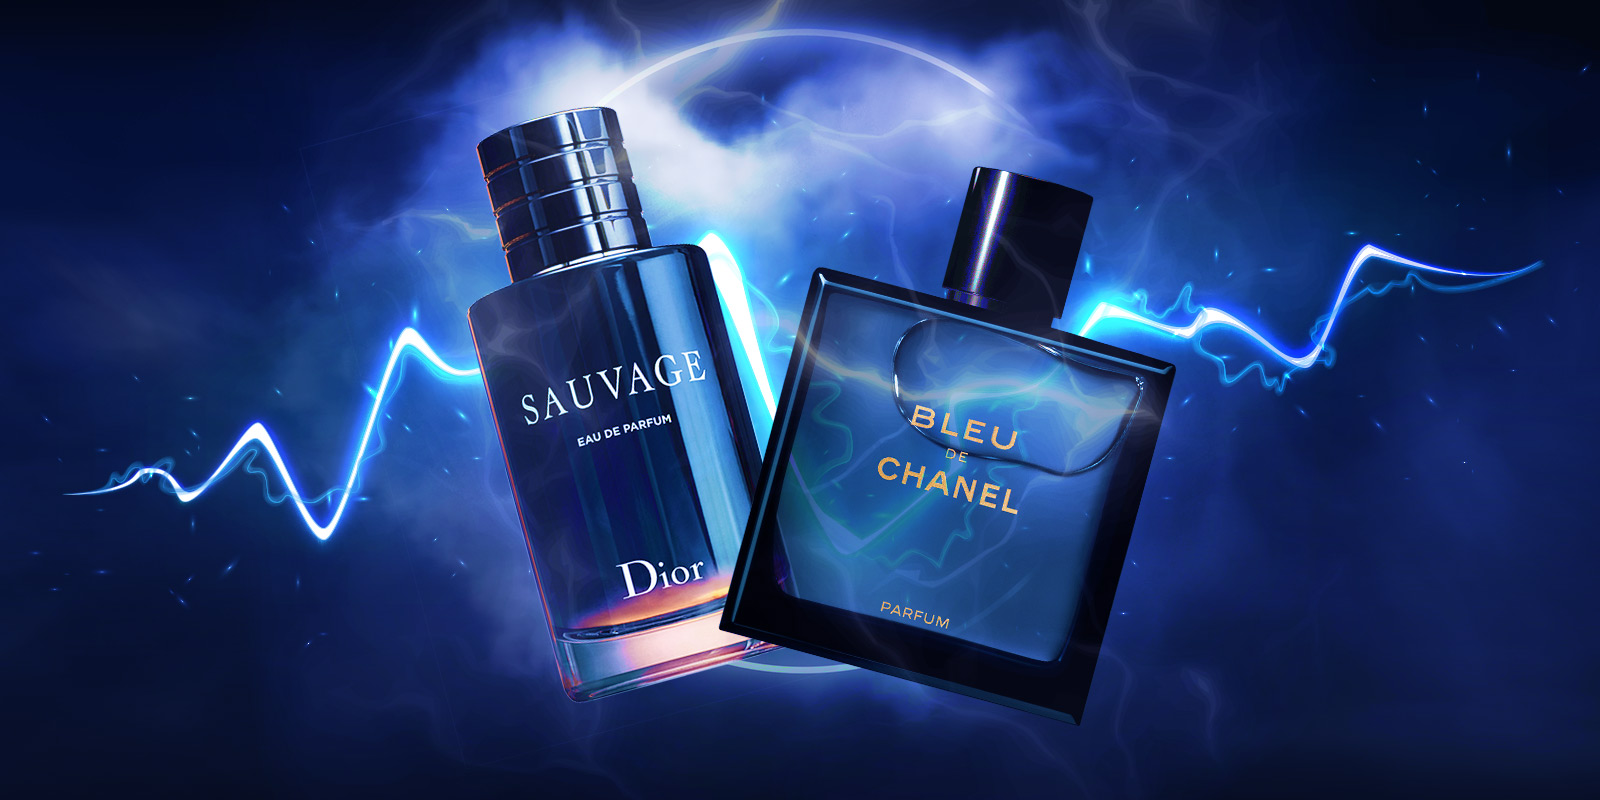 Best for Men: Bleu de Chanel vs. Dior Sauvage